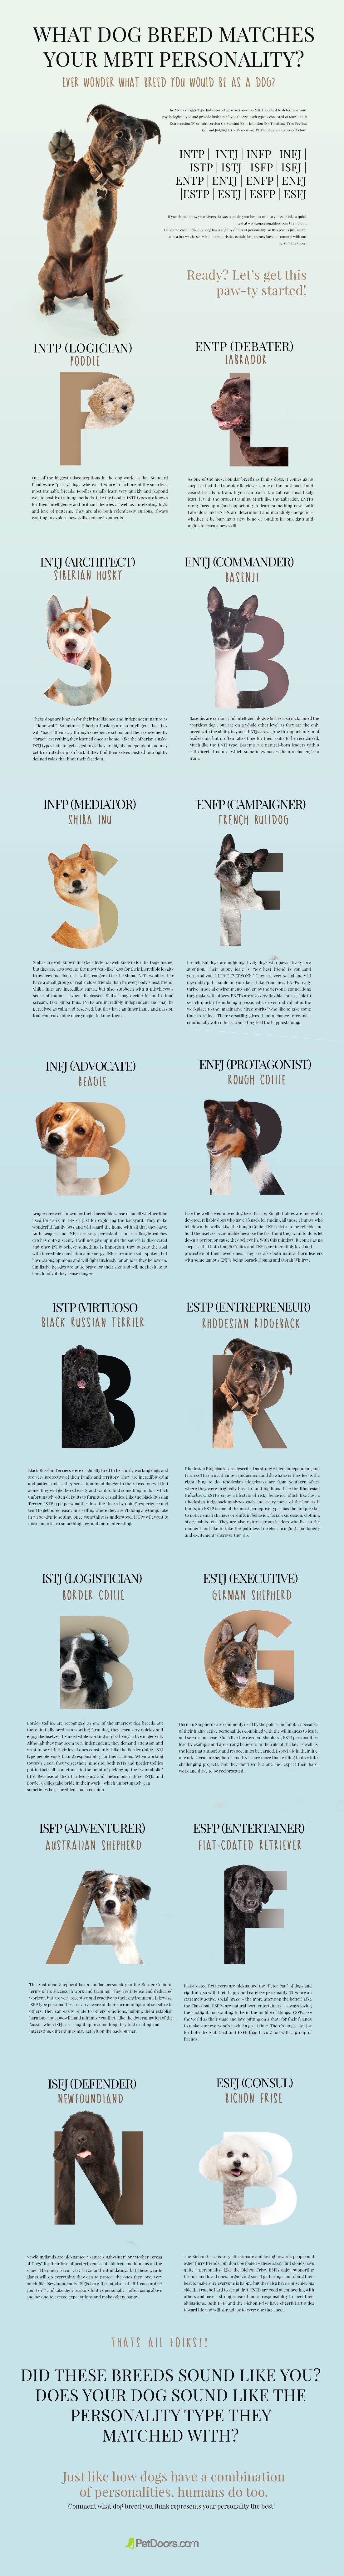 Quale razza di cane corrisponde alla tua personalità MBTI?